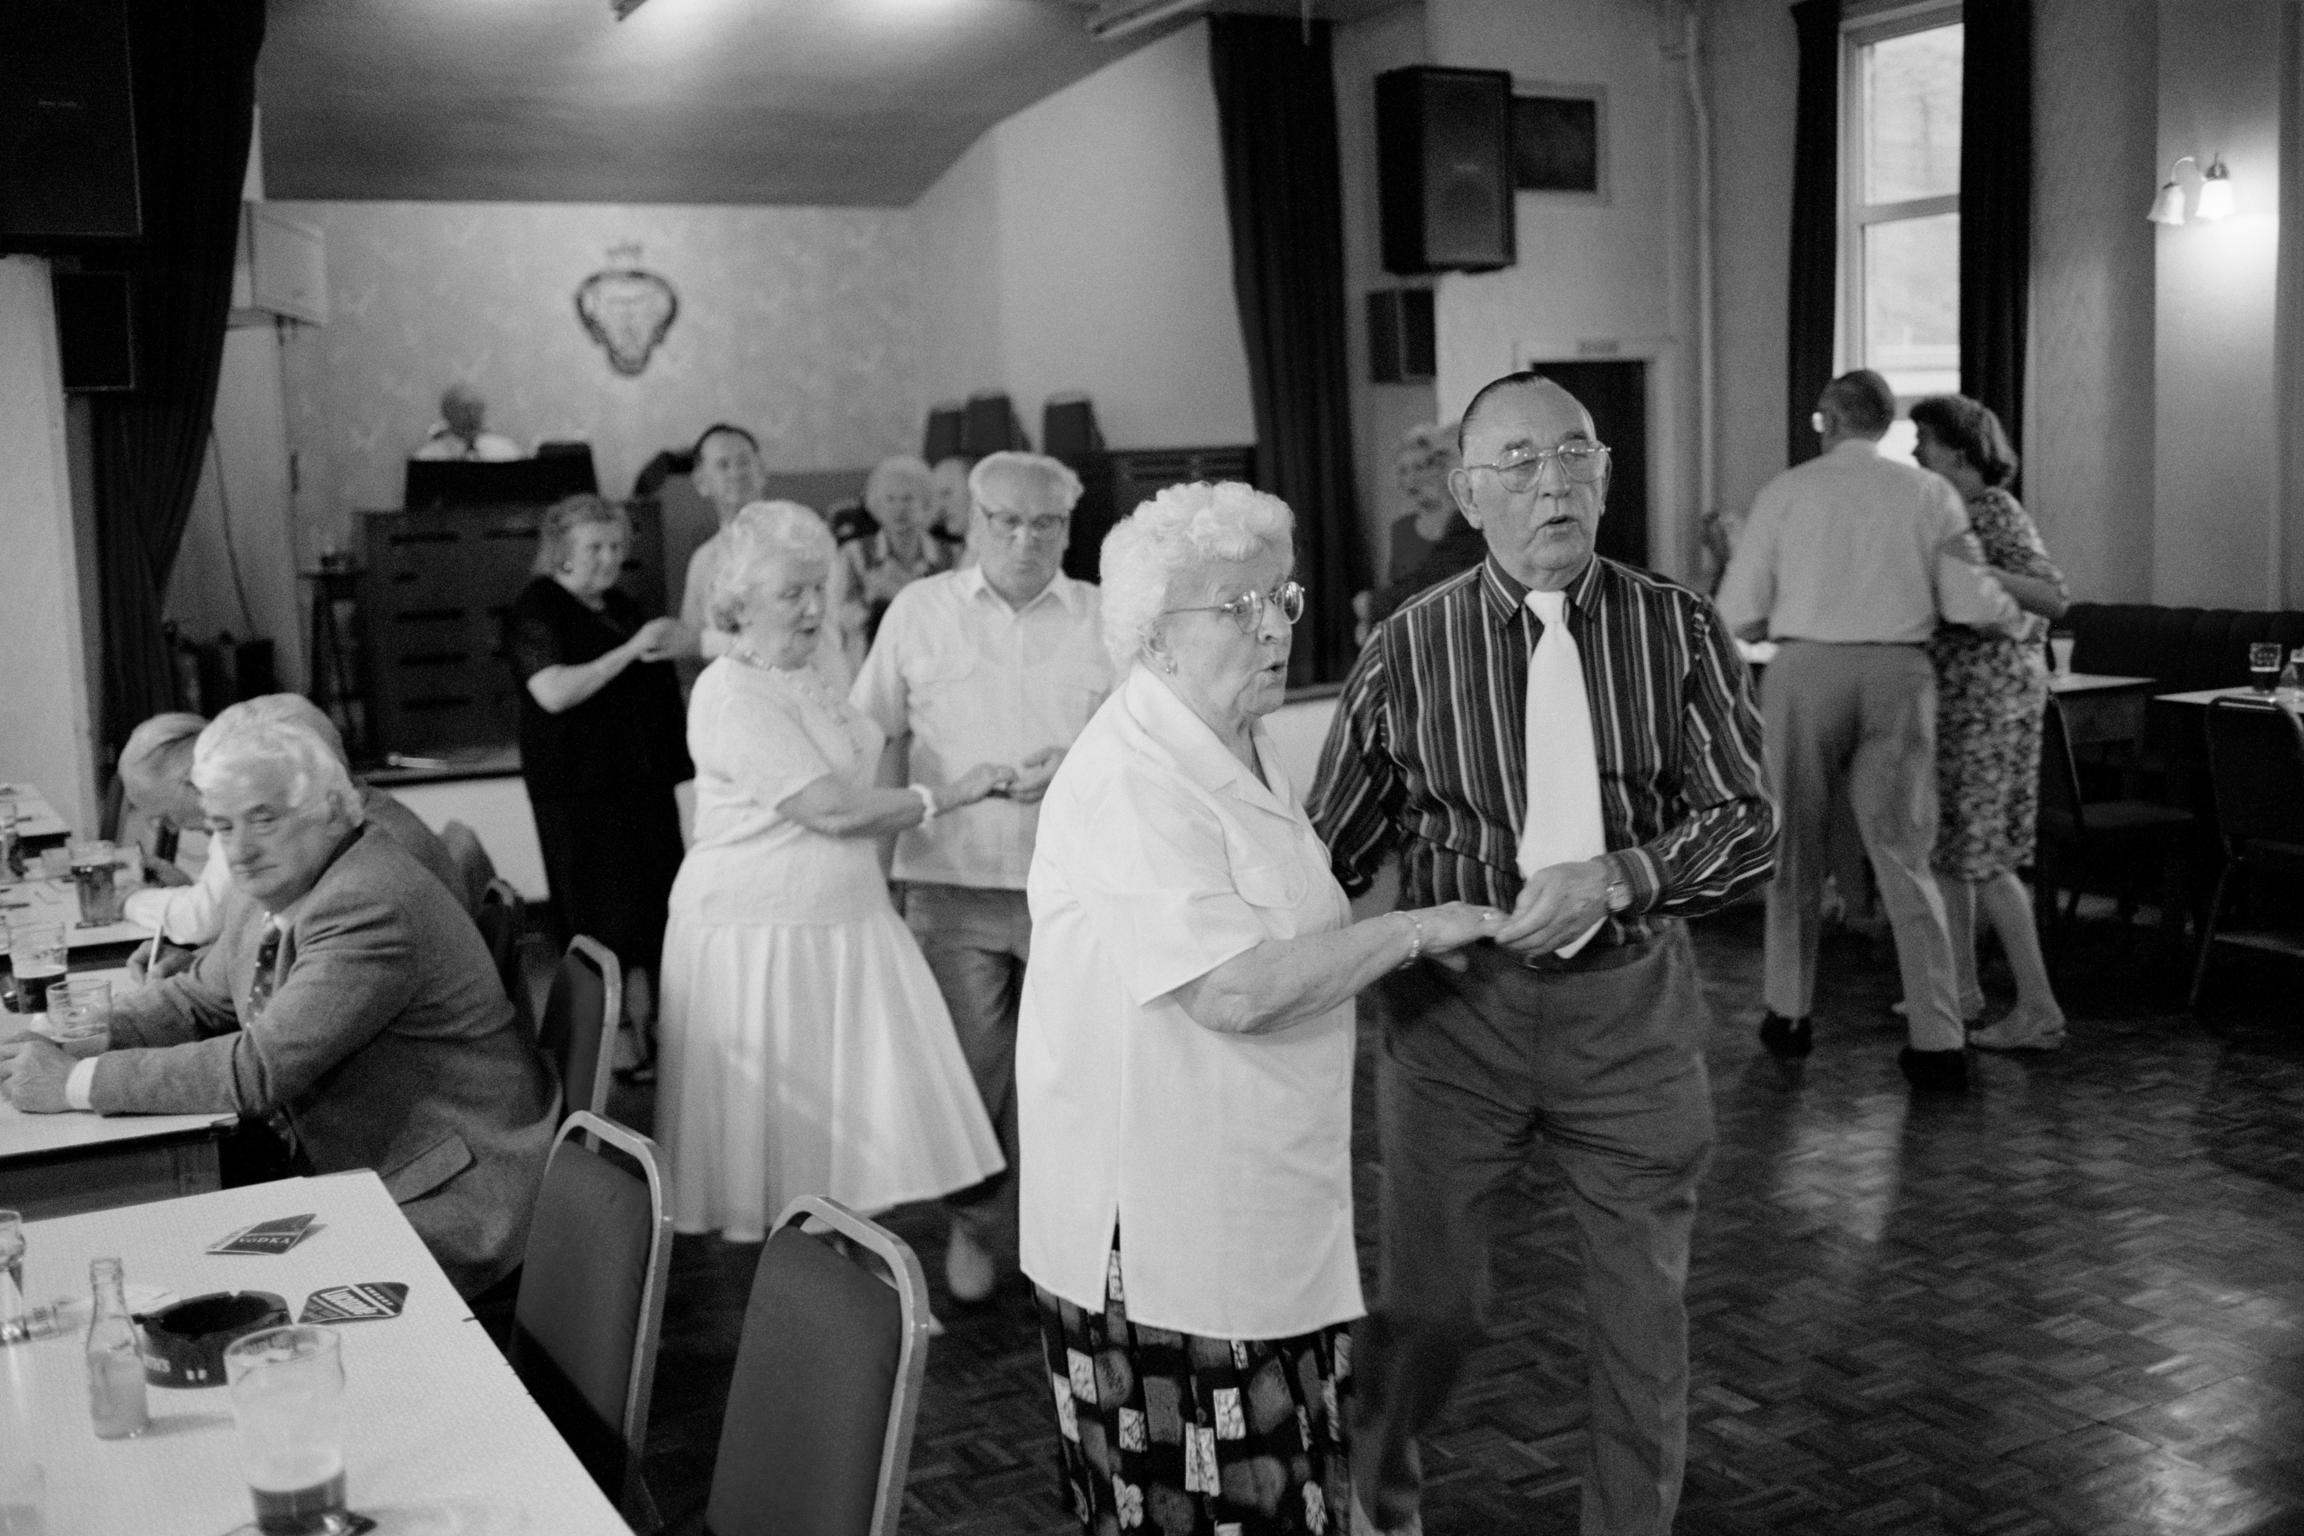 Seniors dance in the local social club. Cwm, Wales